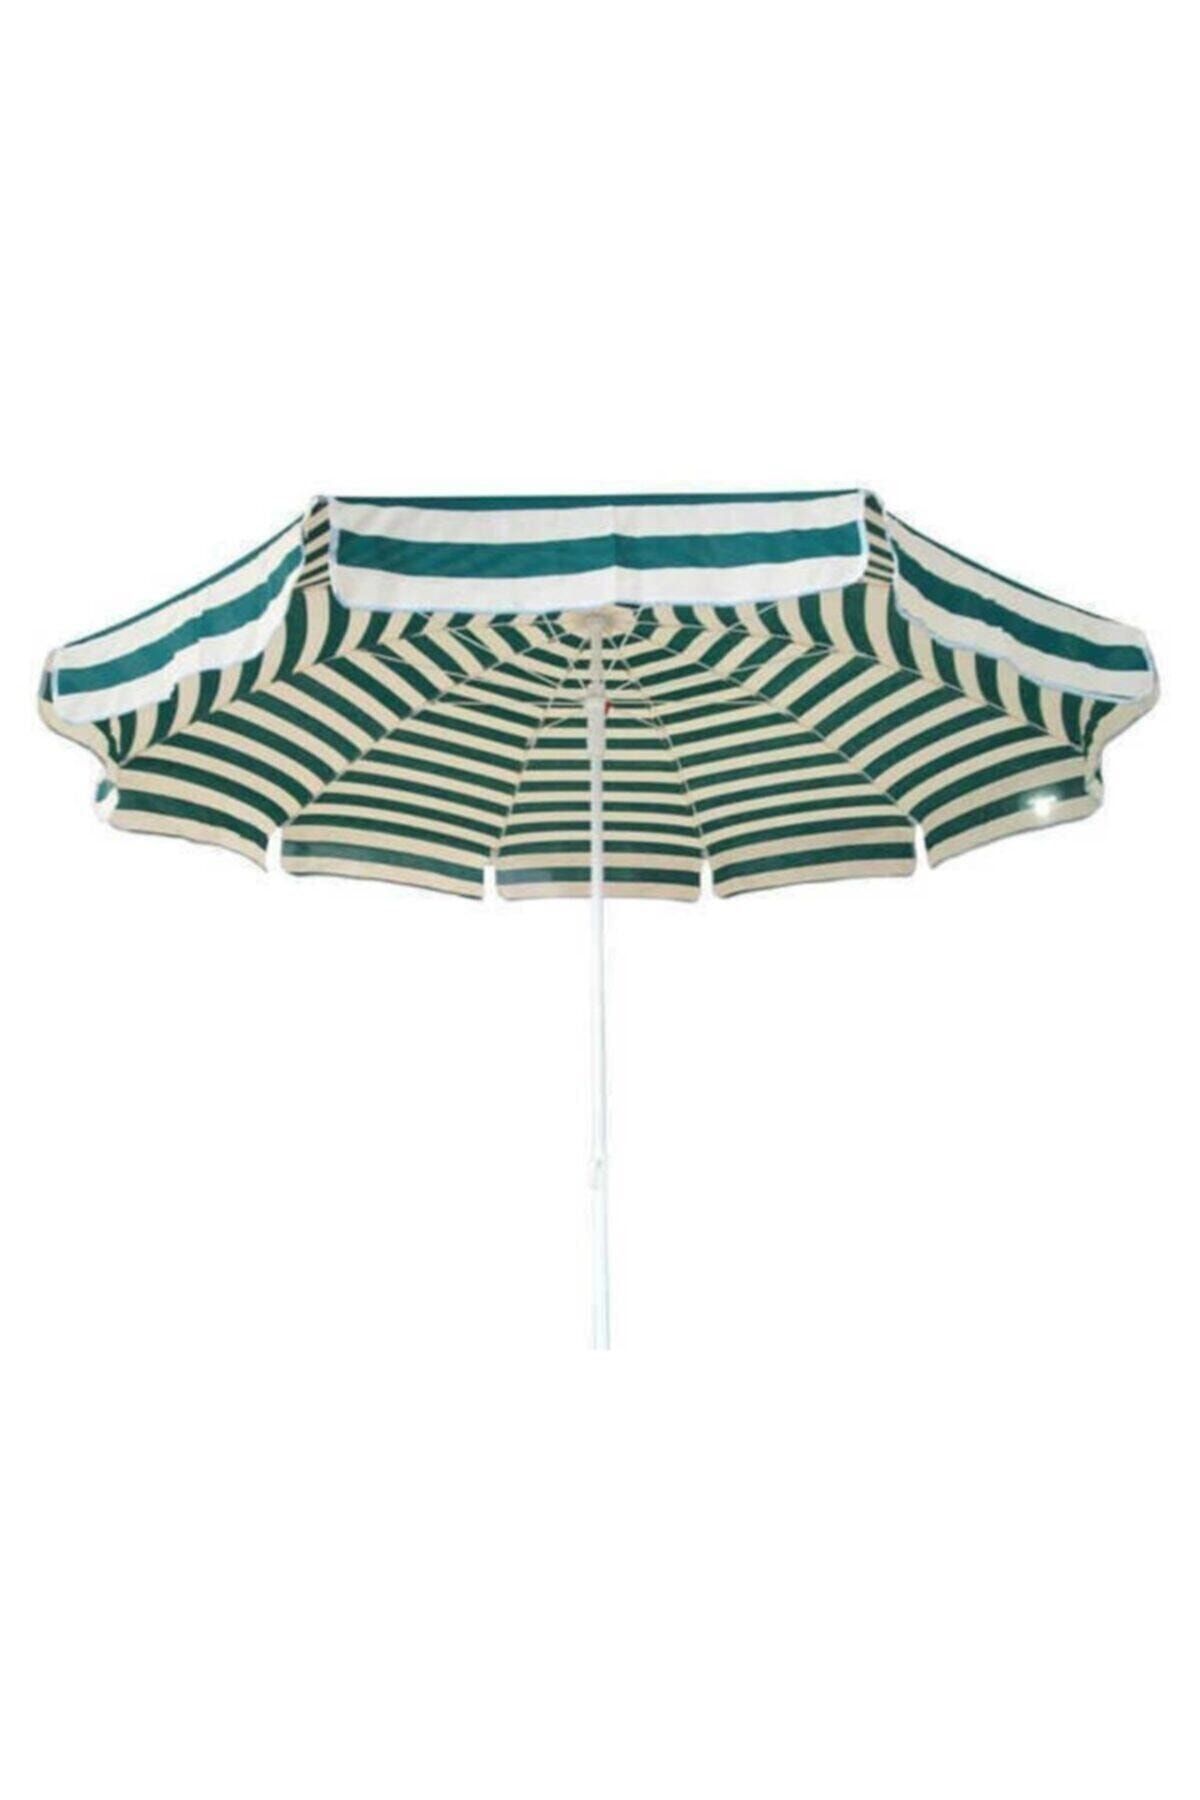 Genel Markalar 2 Metre Plaj Şemsiyesi 10 Telli Eğilebilir